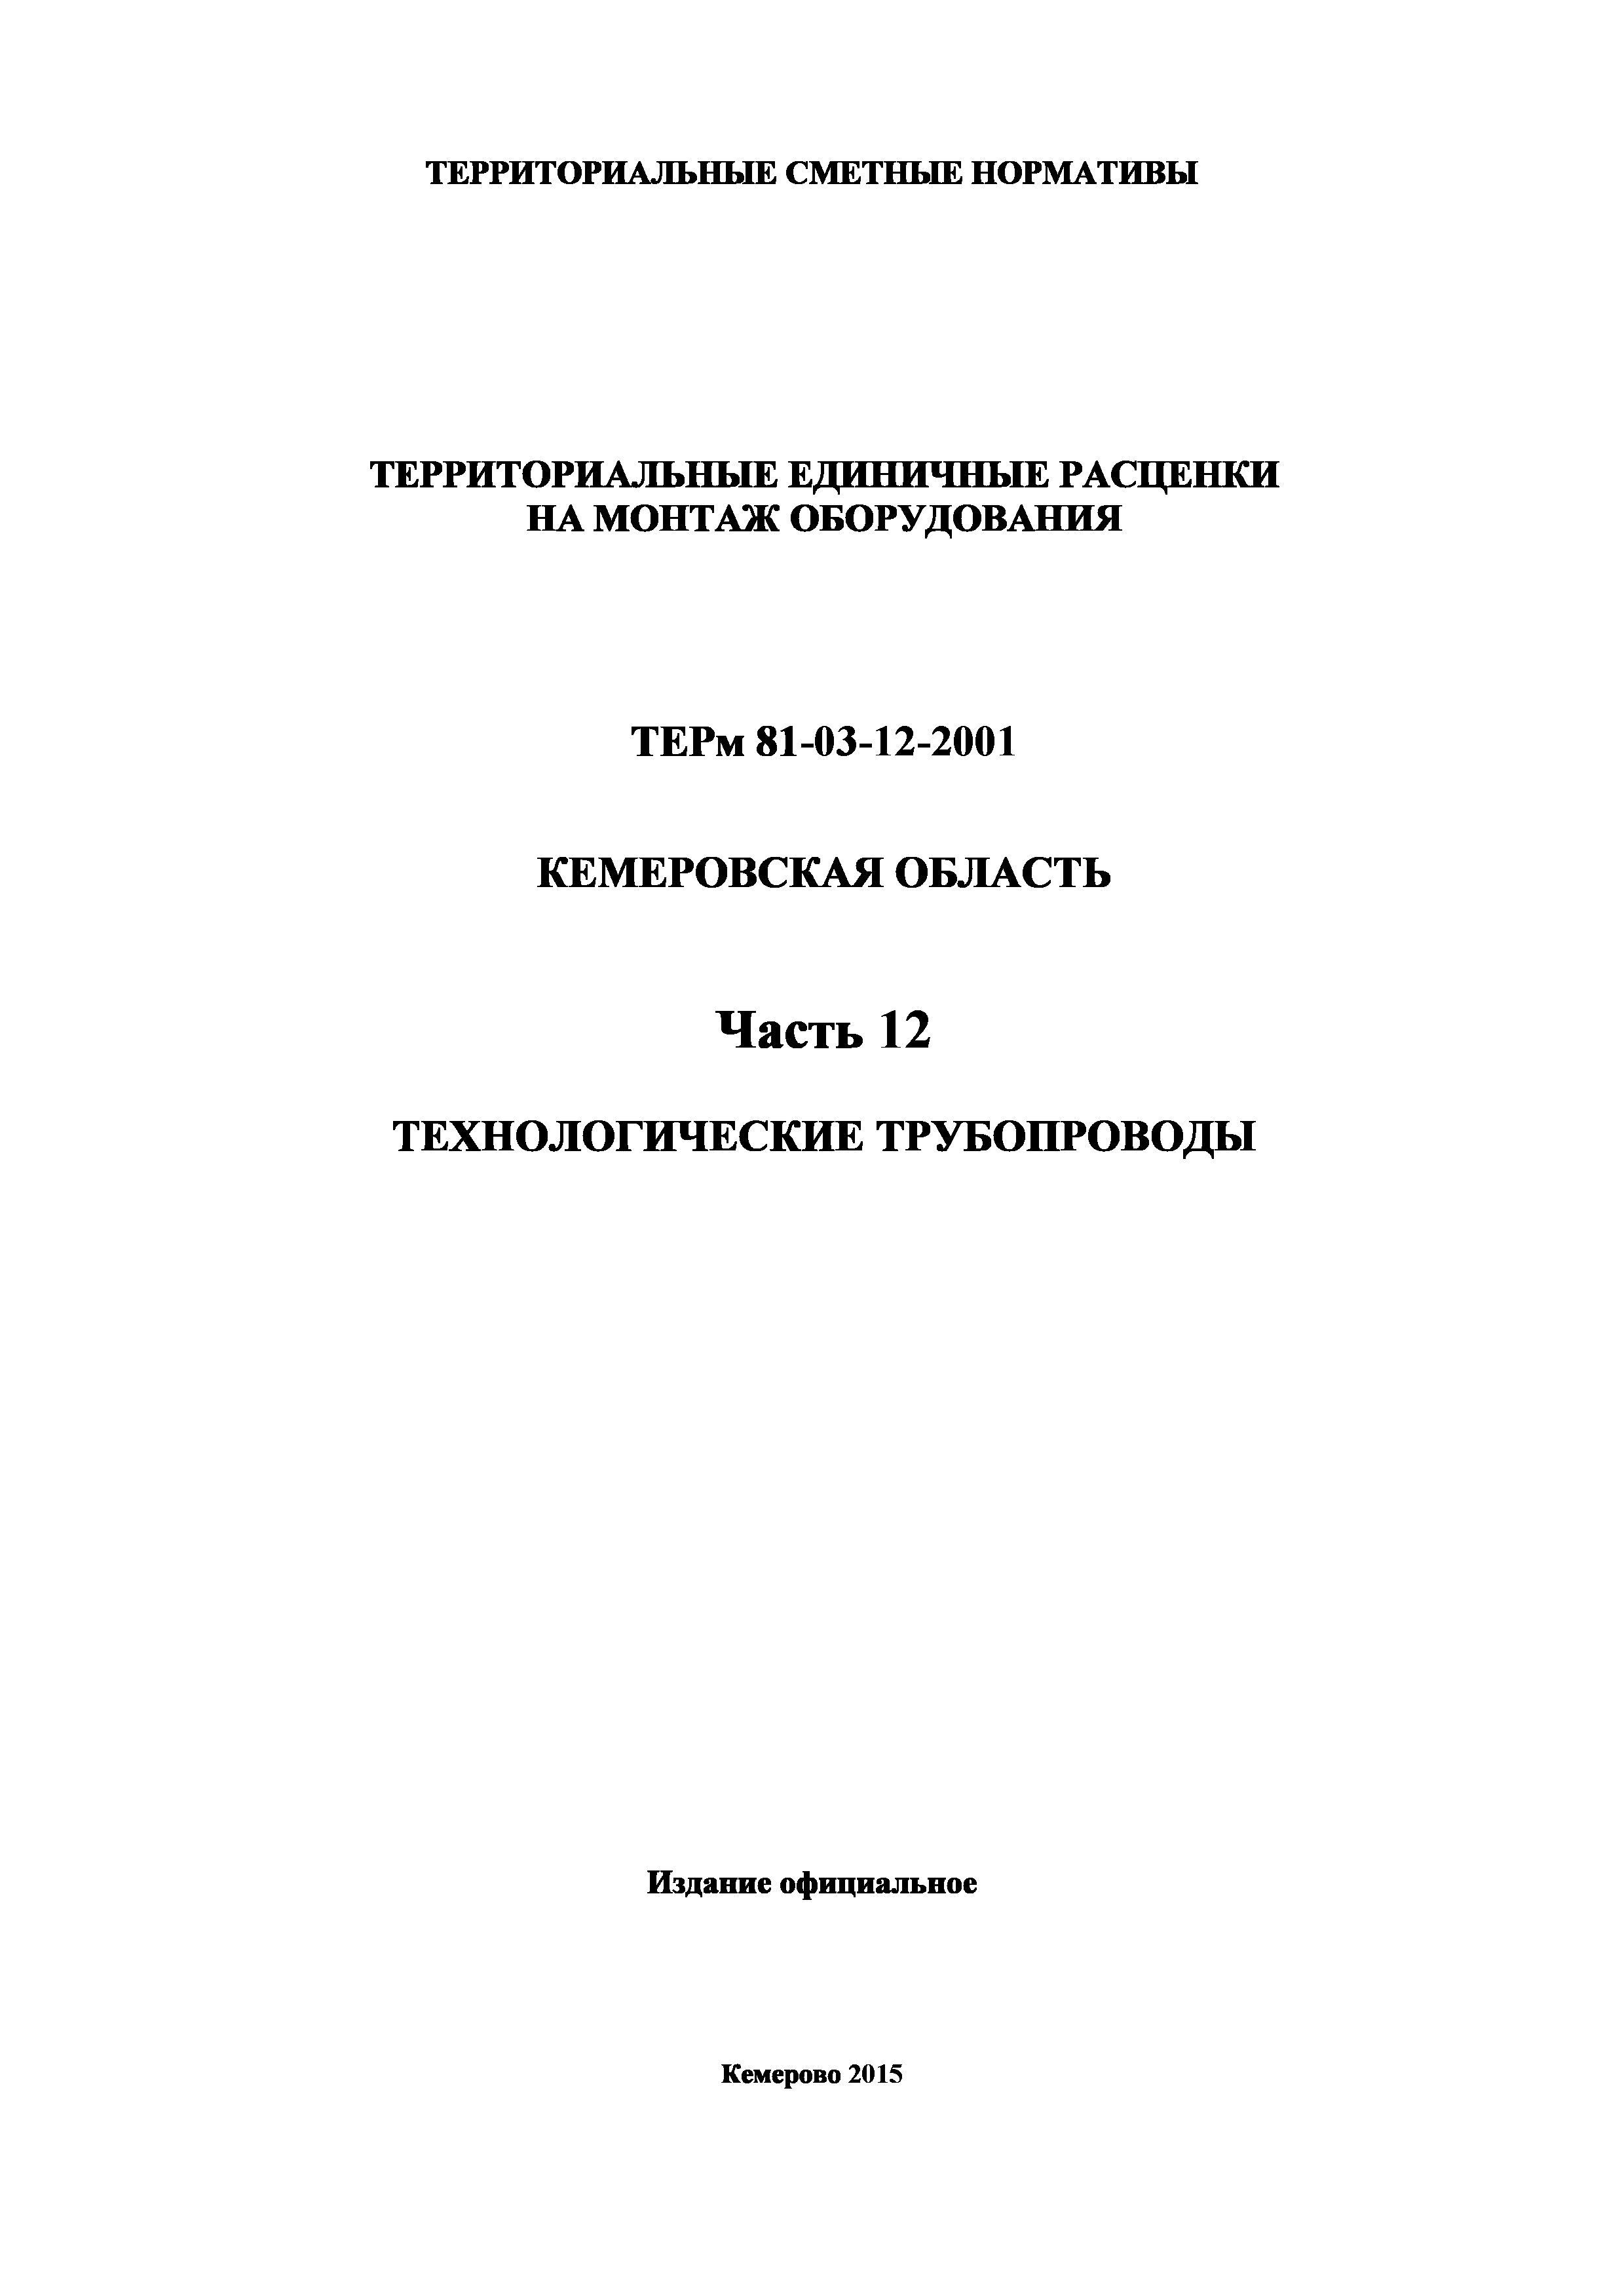 ТЕРм Кемеровская область 81-03-12-2001